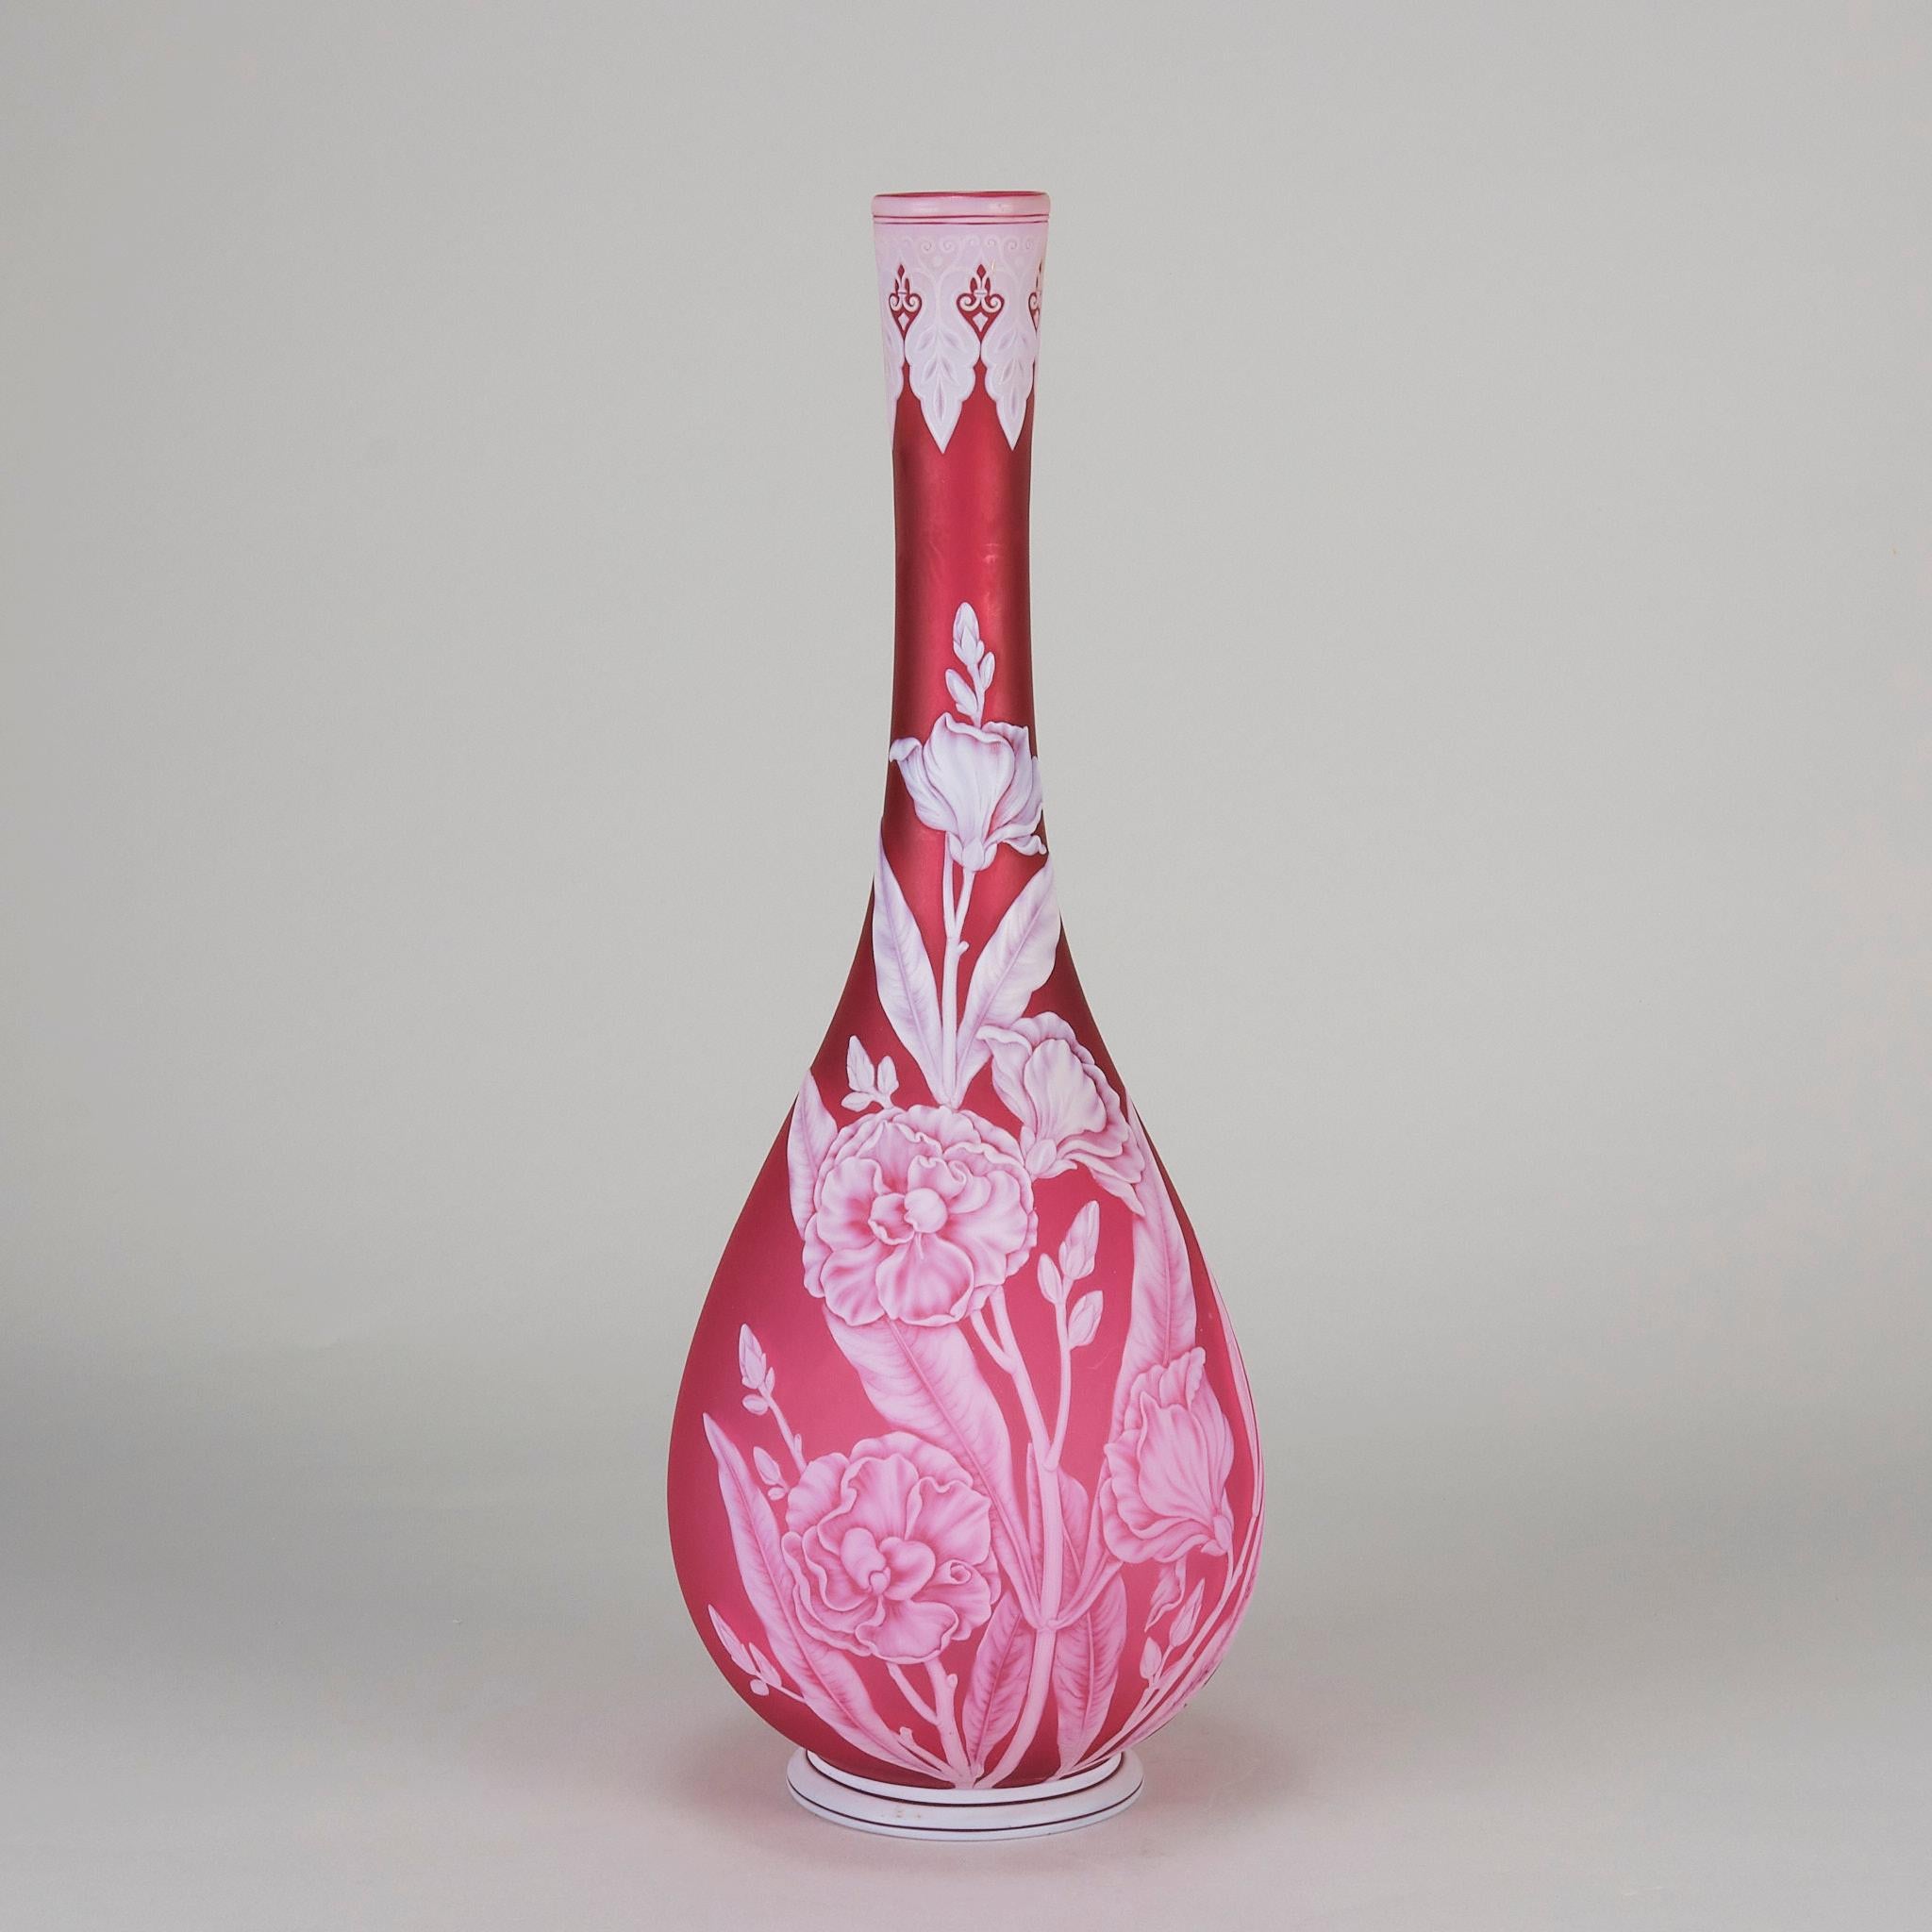 Eine dramatische rote Glasvase aus dem späten 19. Jahrhundert mit weißem Kamee-Gehäuse, das mit einer schönen Landschaft aus blühenden Oleanderblüten und einem fliegenden Schmetterling durchbrochen ist. Auf dem Sockel signiert: Oleander, eine Serie